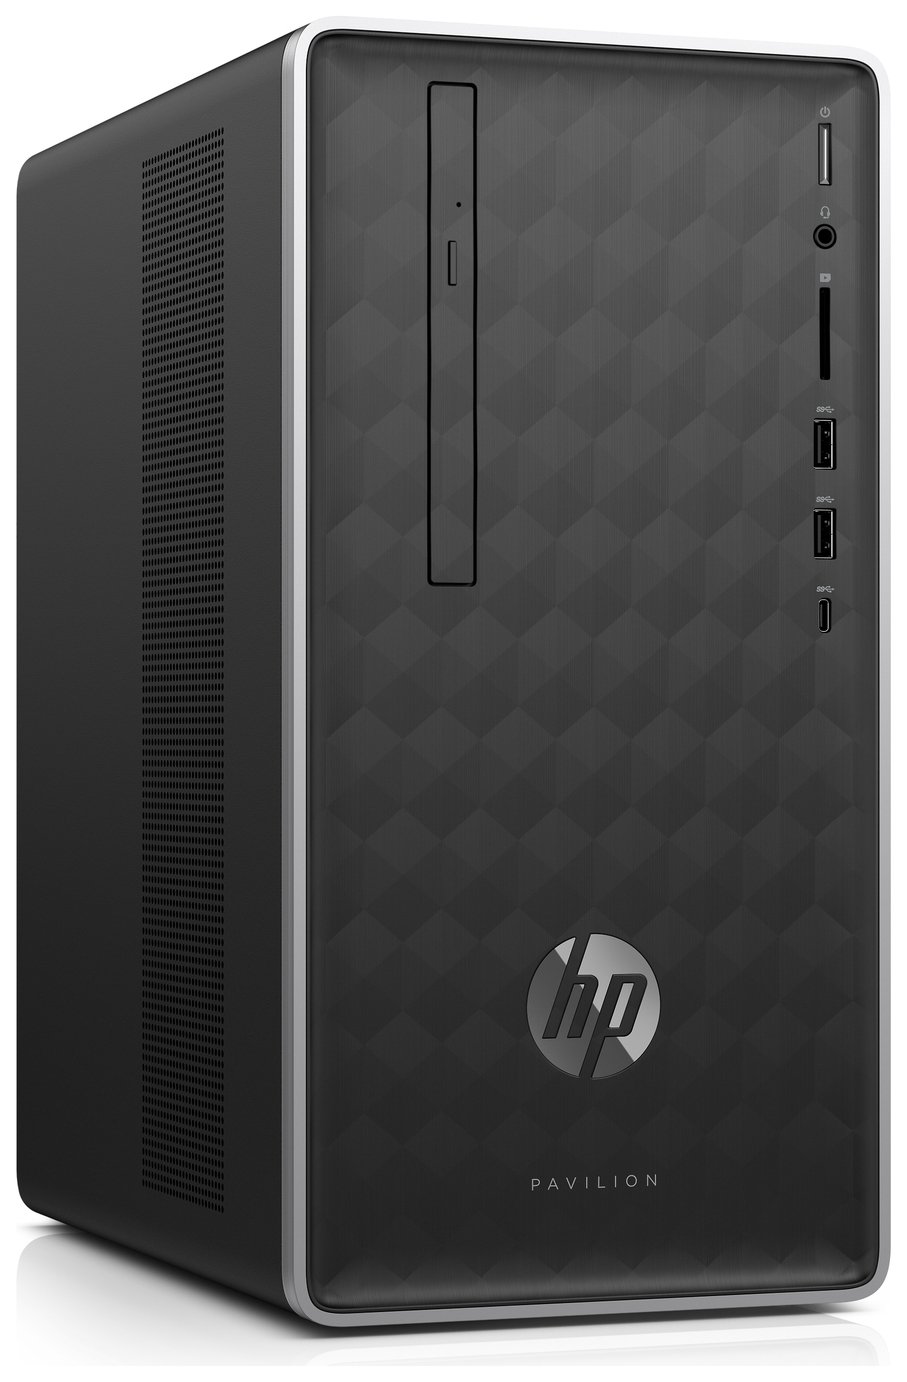 HP Pavilion i3 4GB 1TB Desktop PC - Black